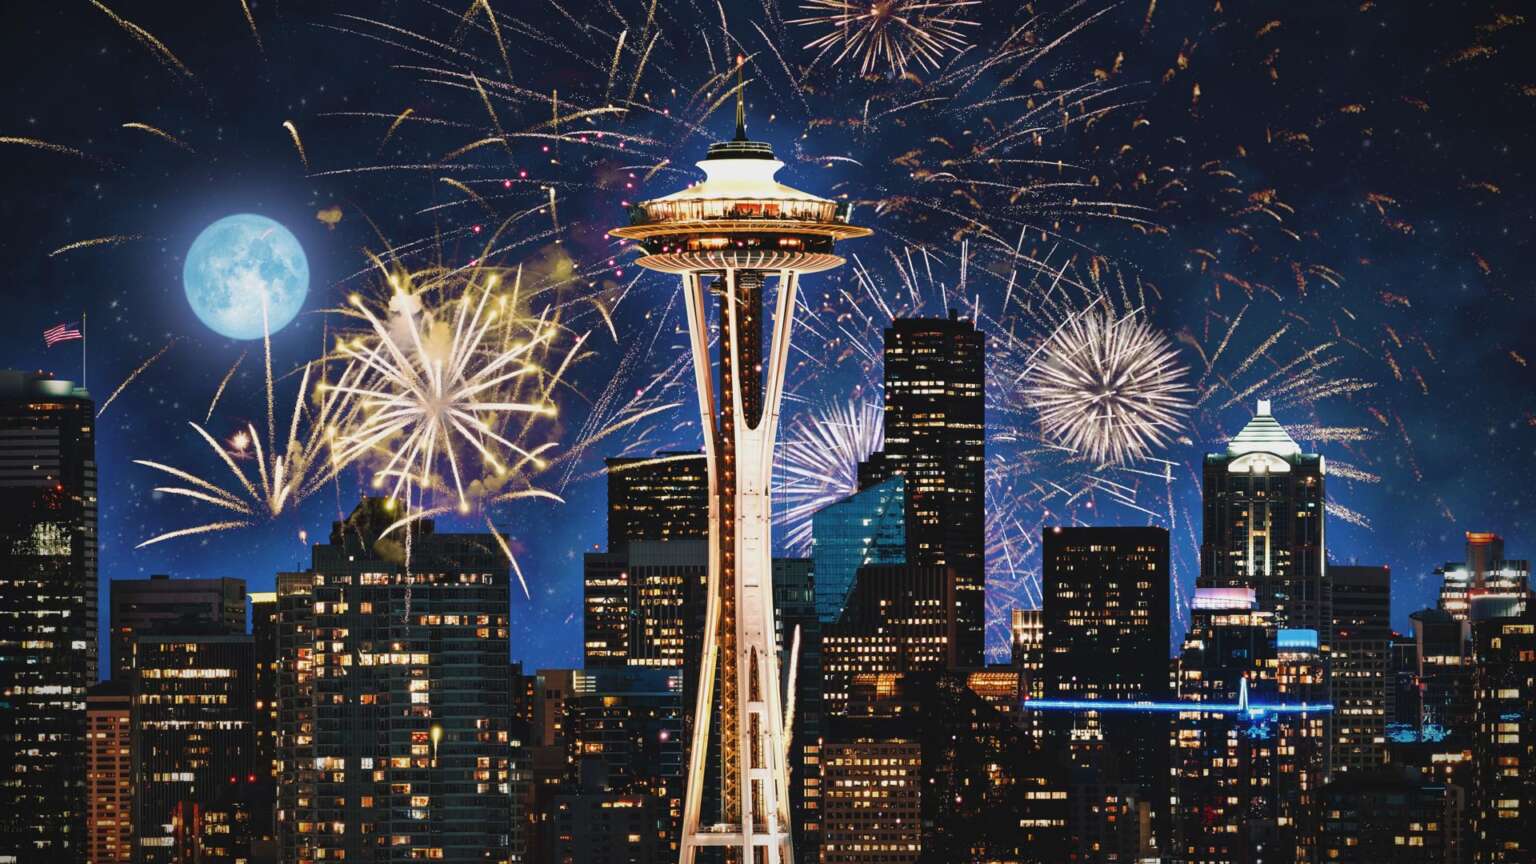 [4k] Seattle Washington Space Needle Fireworks Celebration 4th Of July